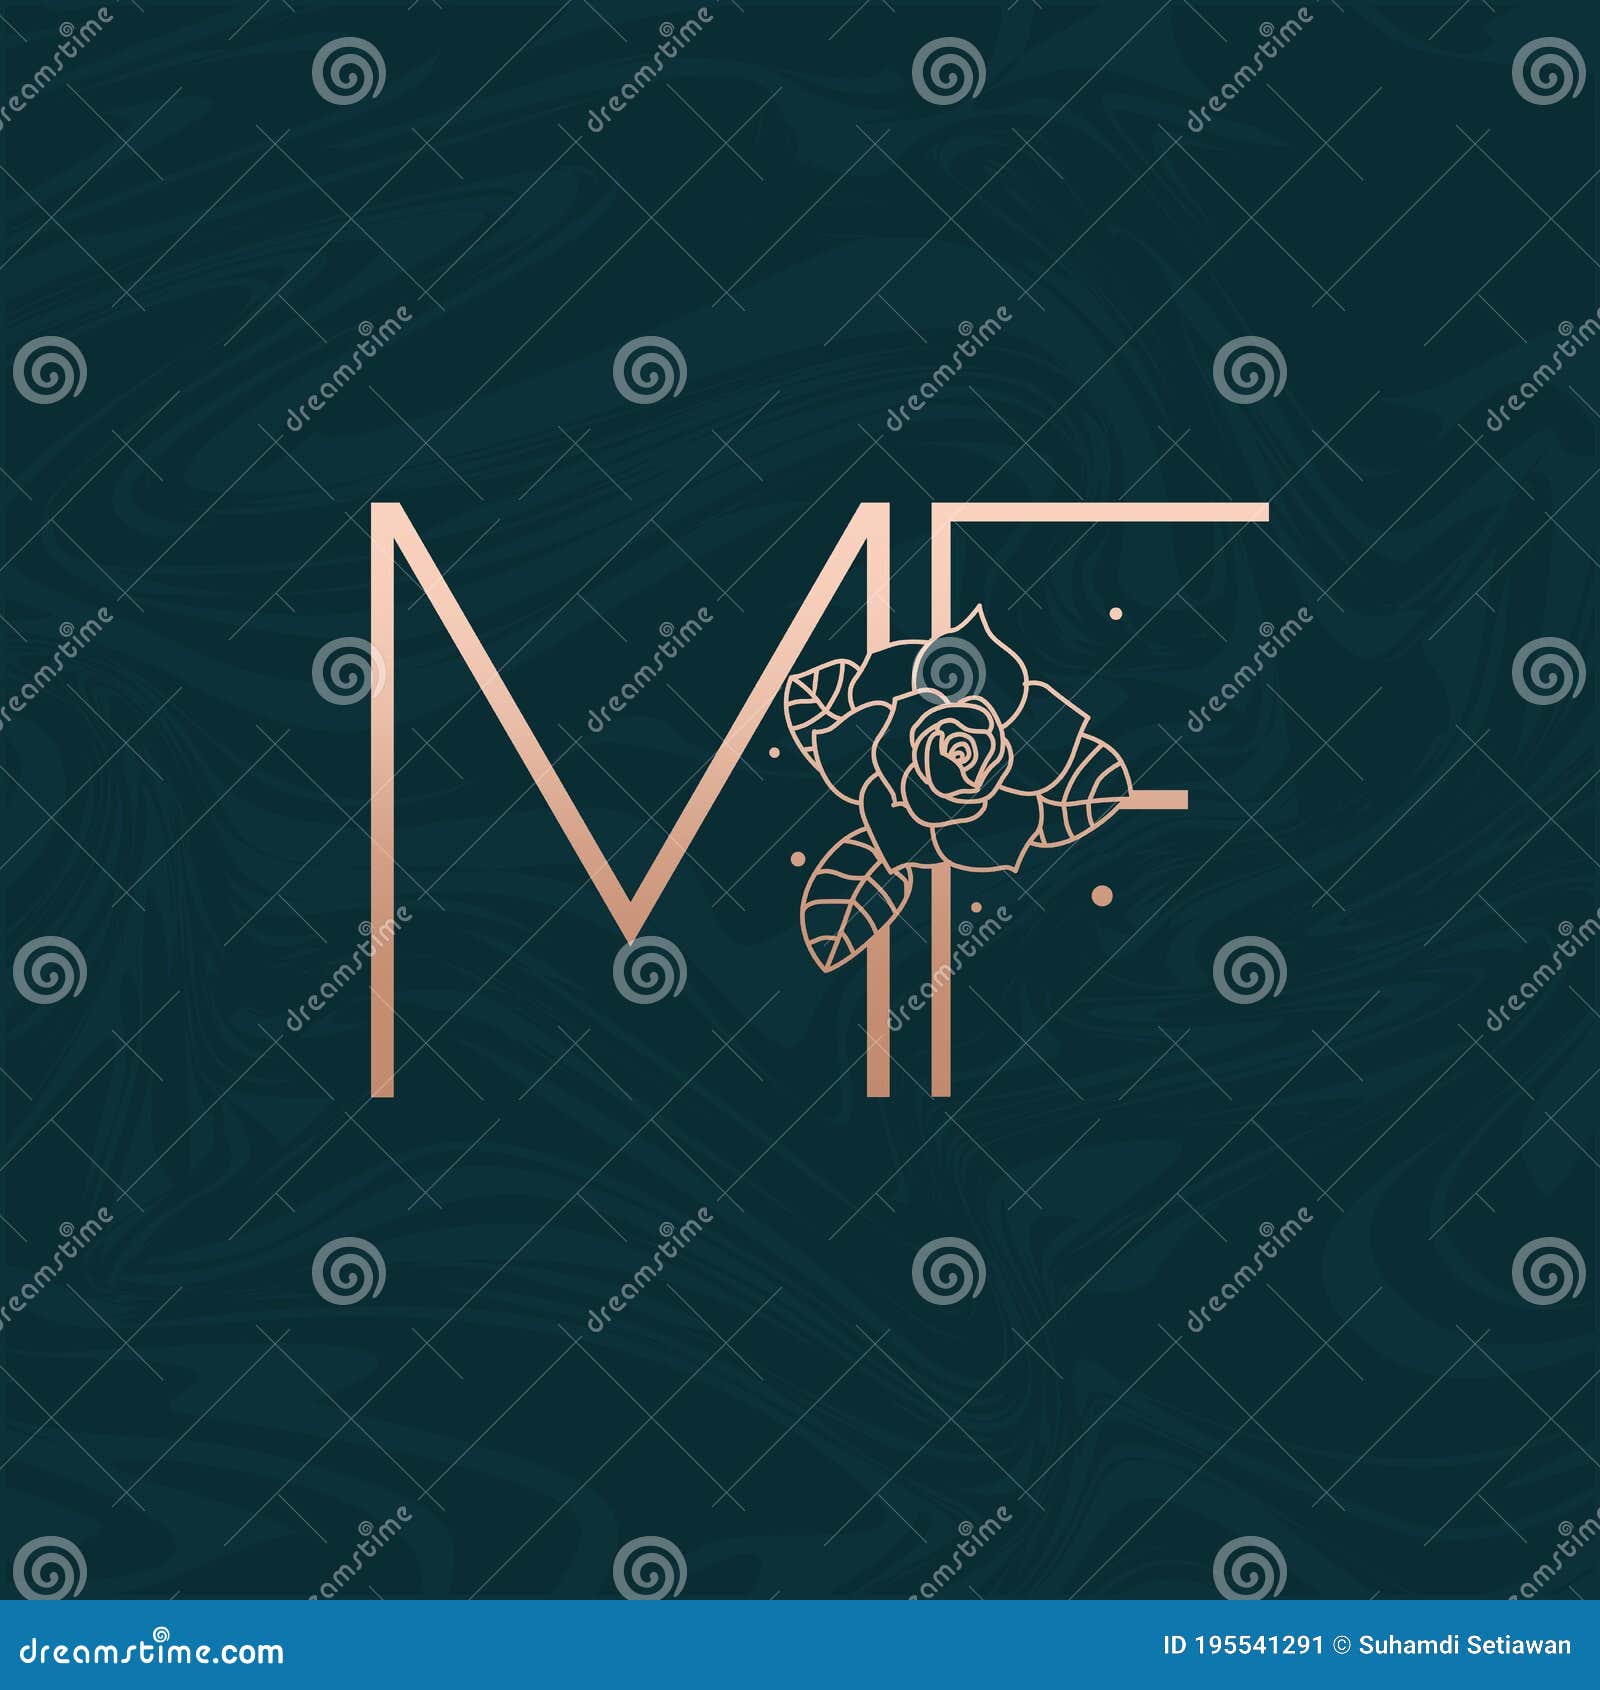 Initial Flower Logo 